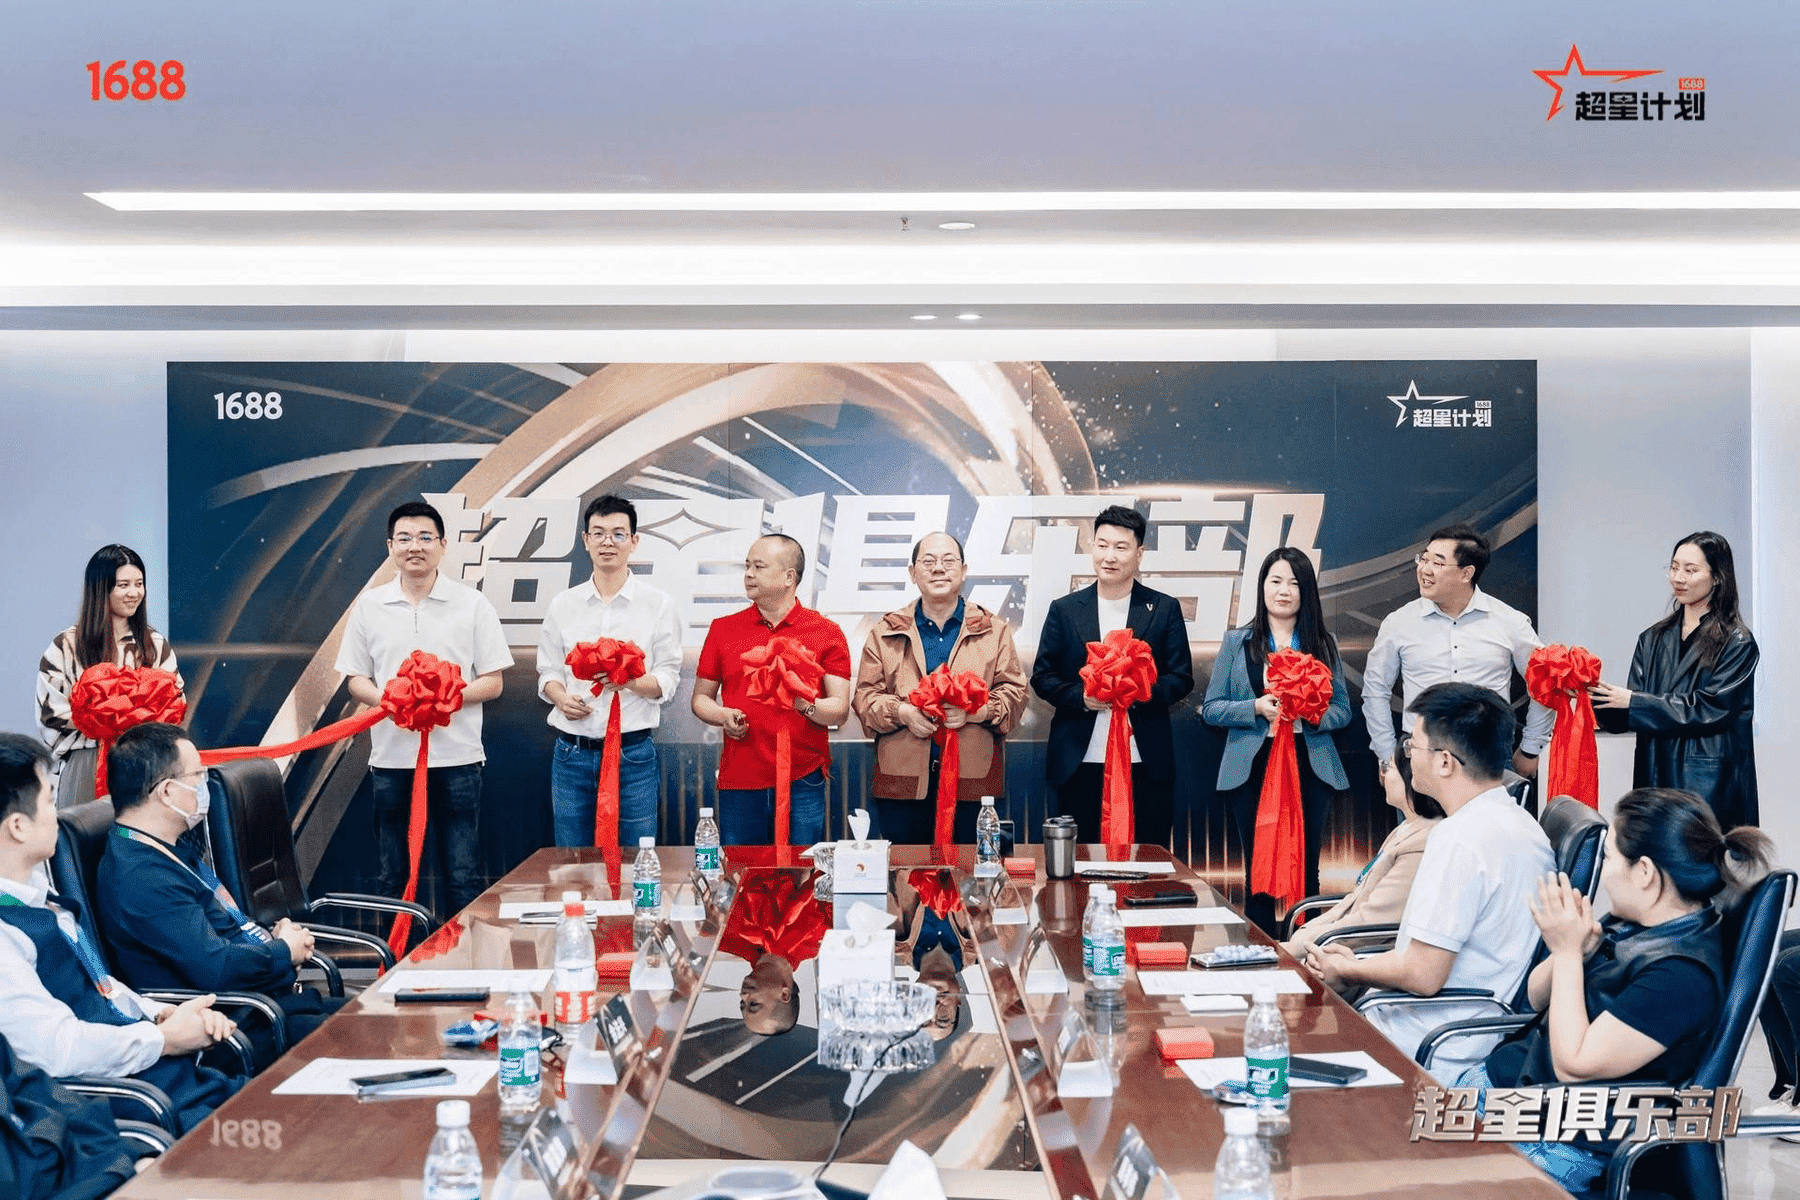 万博max中国官方网站被授予1688超星计划合作伙伴、1688 SKA游学基地以及超星俱乐部东莞分部会长单位